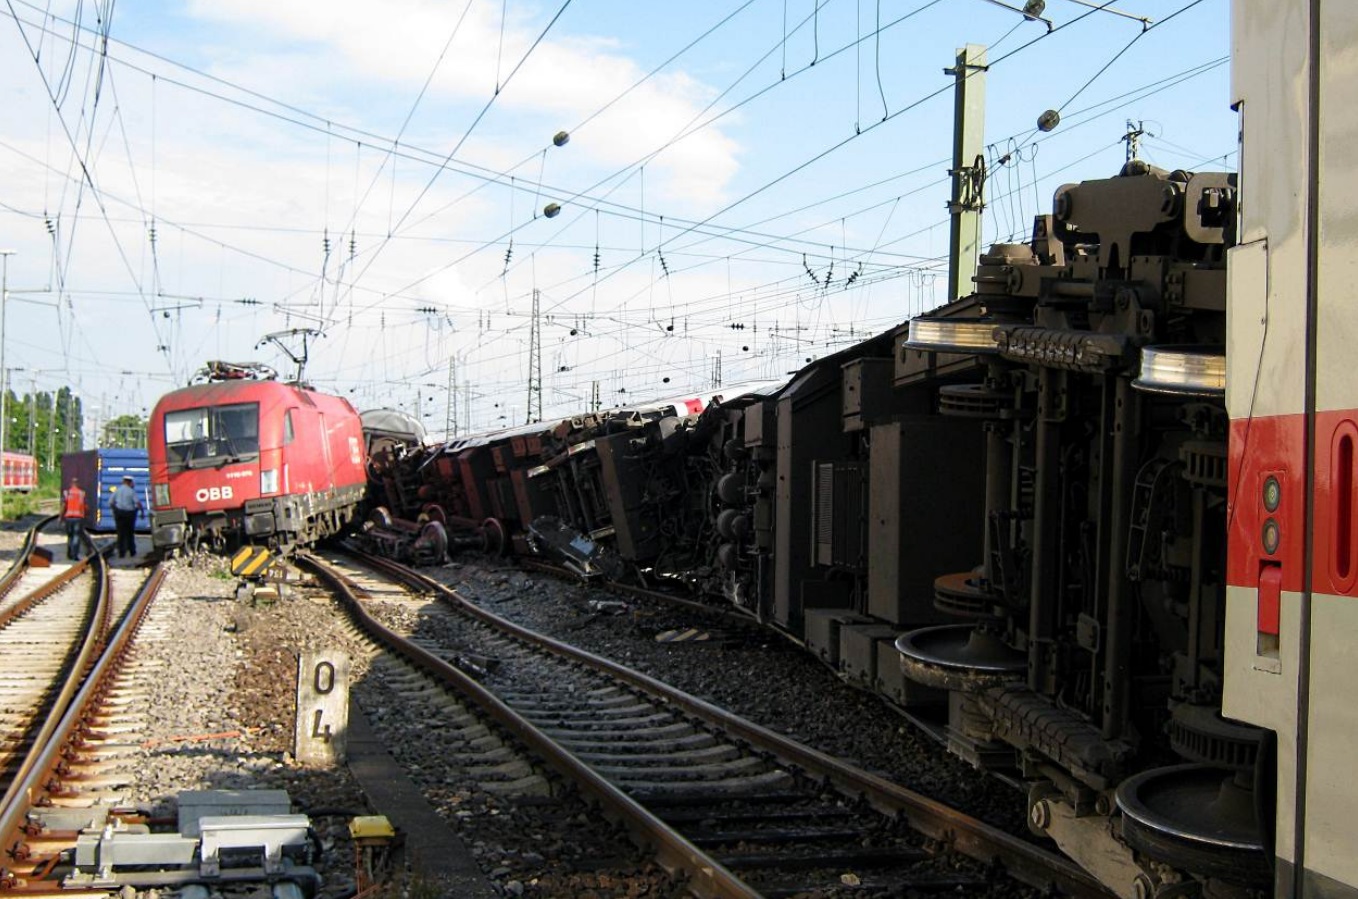 Der Lokführer eines Güterzuges überfuhr mehrere rote Signale. Die Folge: Am 1. August 2014 kam es im Mannheimer Hauptbahnhof zu einer Zugkollision. (Quelle: EUB)